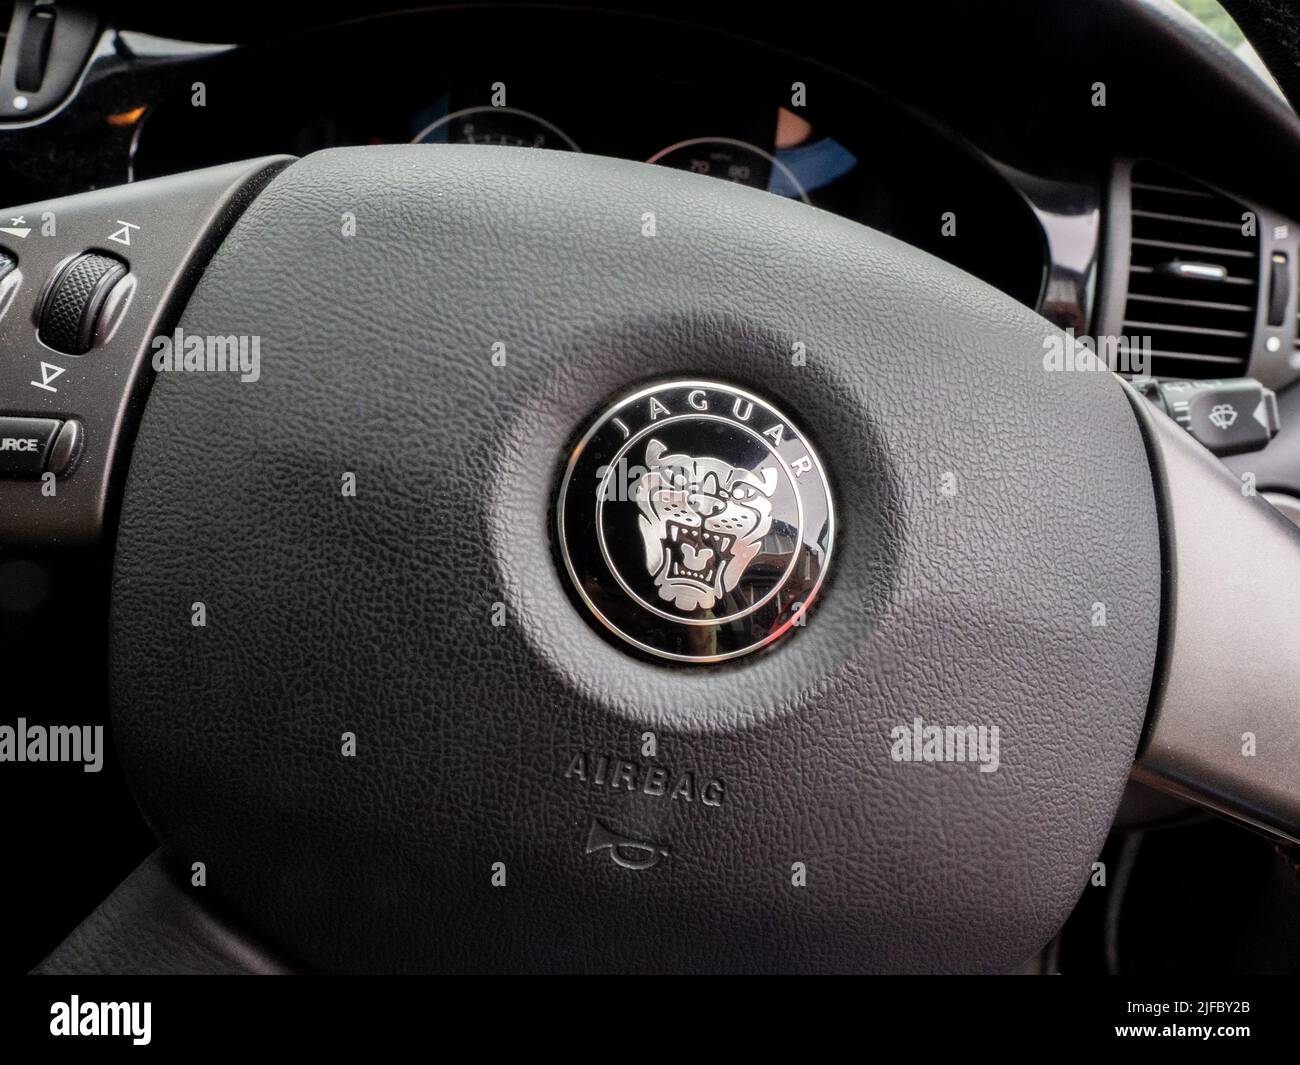 Jaguar car steering wheel badge Stock Photo